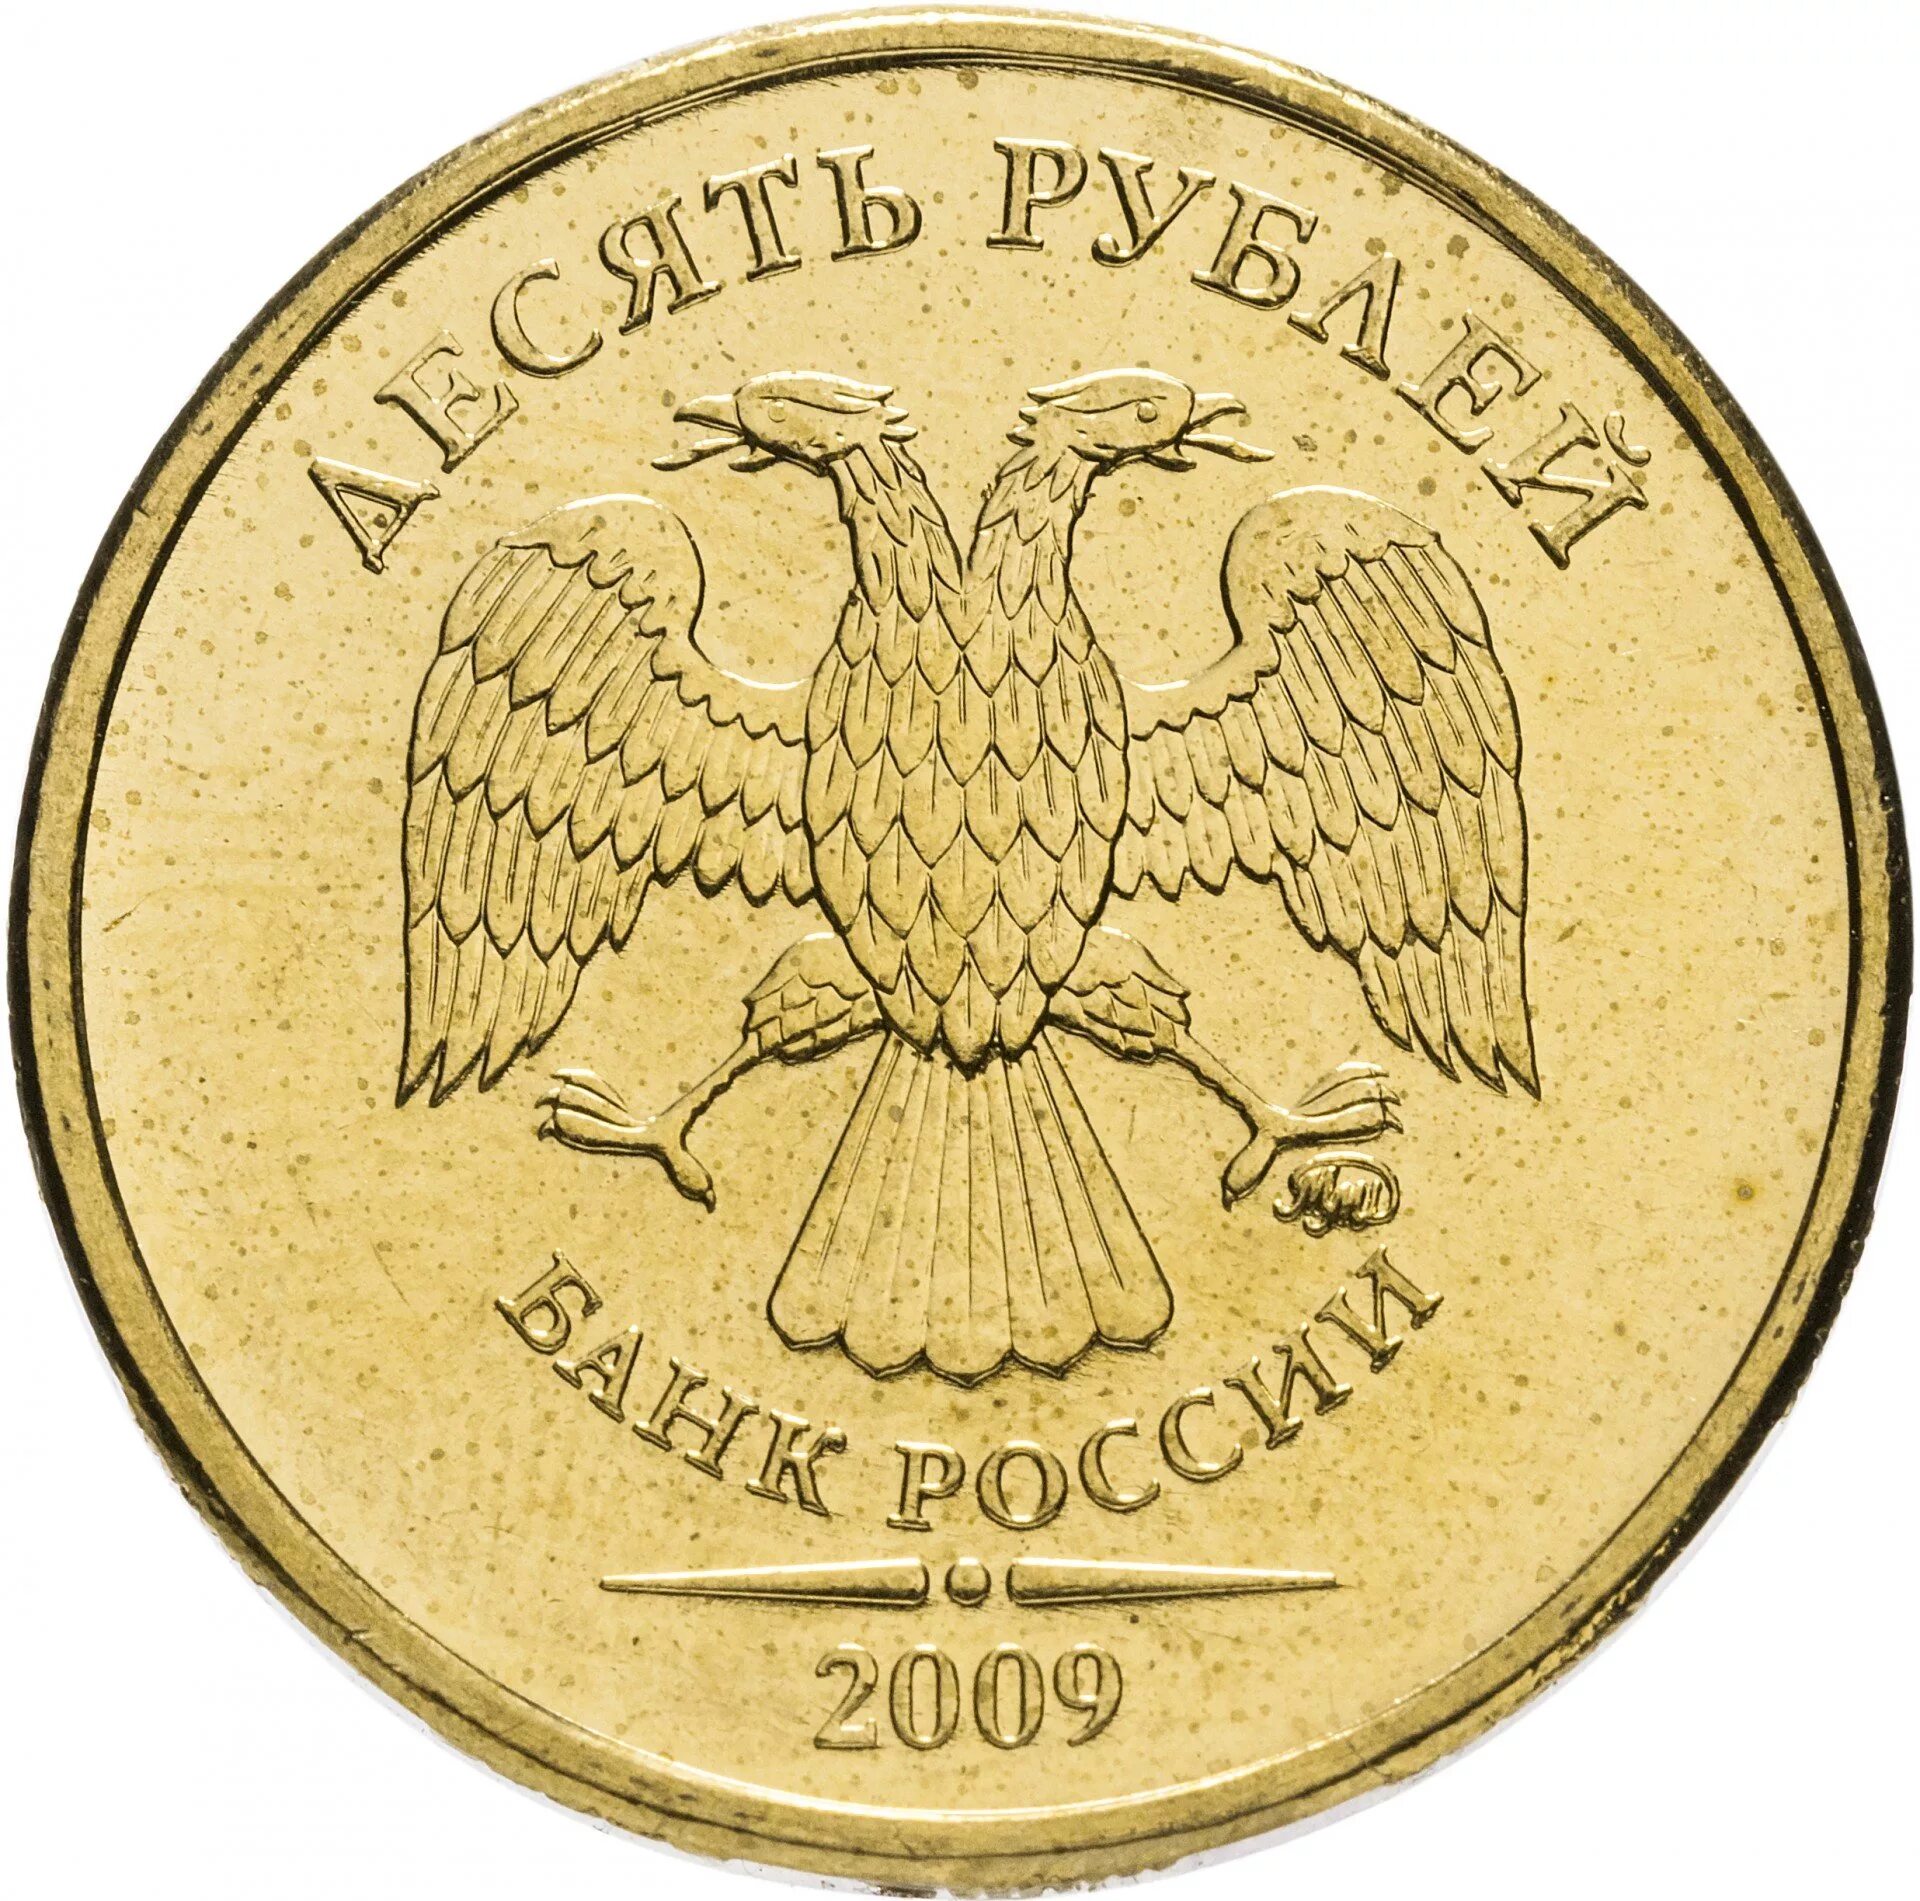 10 Рублей 2010 ММД. Монетка десять рублей 2010 года. 100 Рублей 1995 года. Монета 100 рублей 1995 года. Монеты россии 10 руб